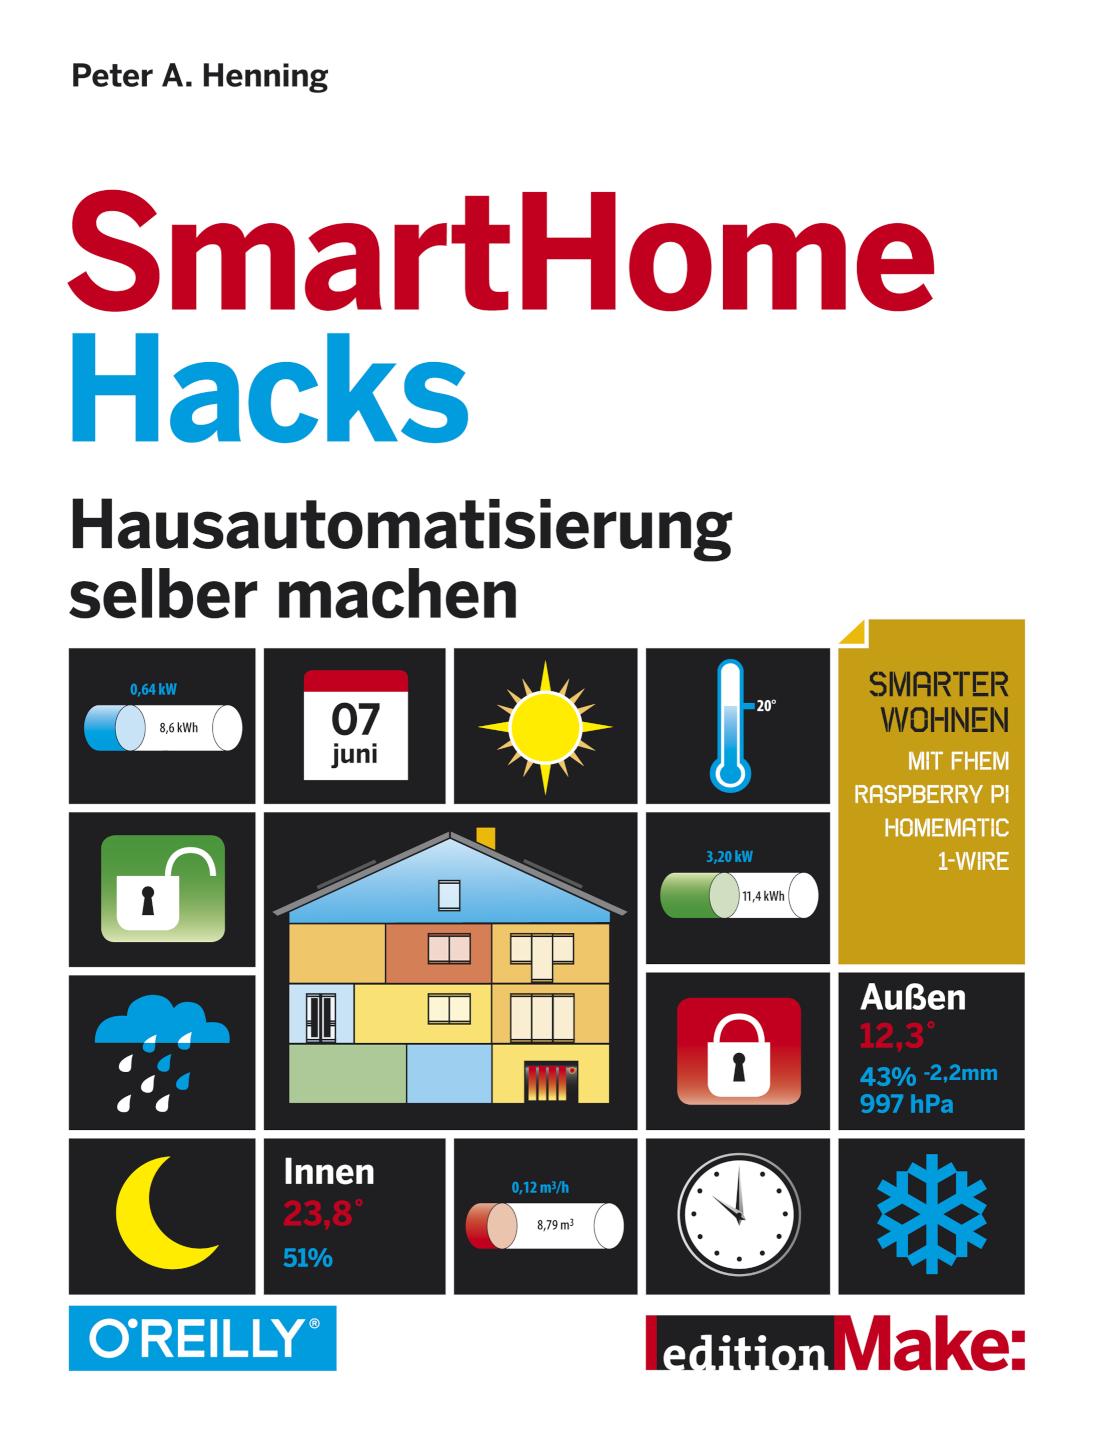 SmartHome Hacks Hausautomatisierung selber machen